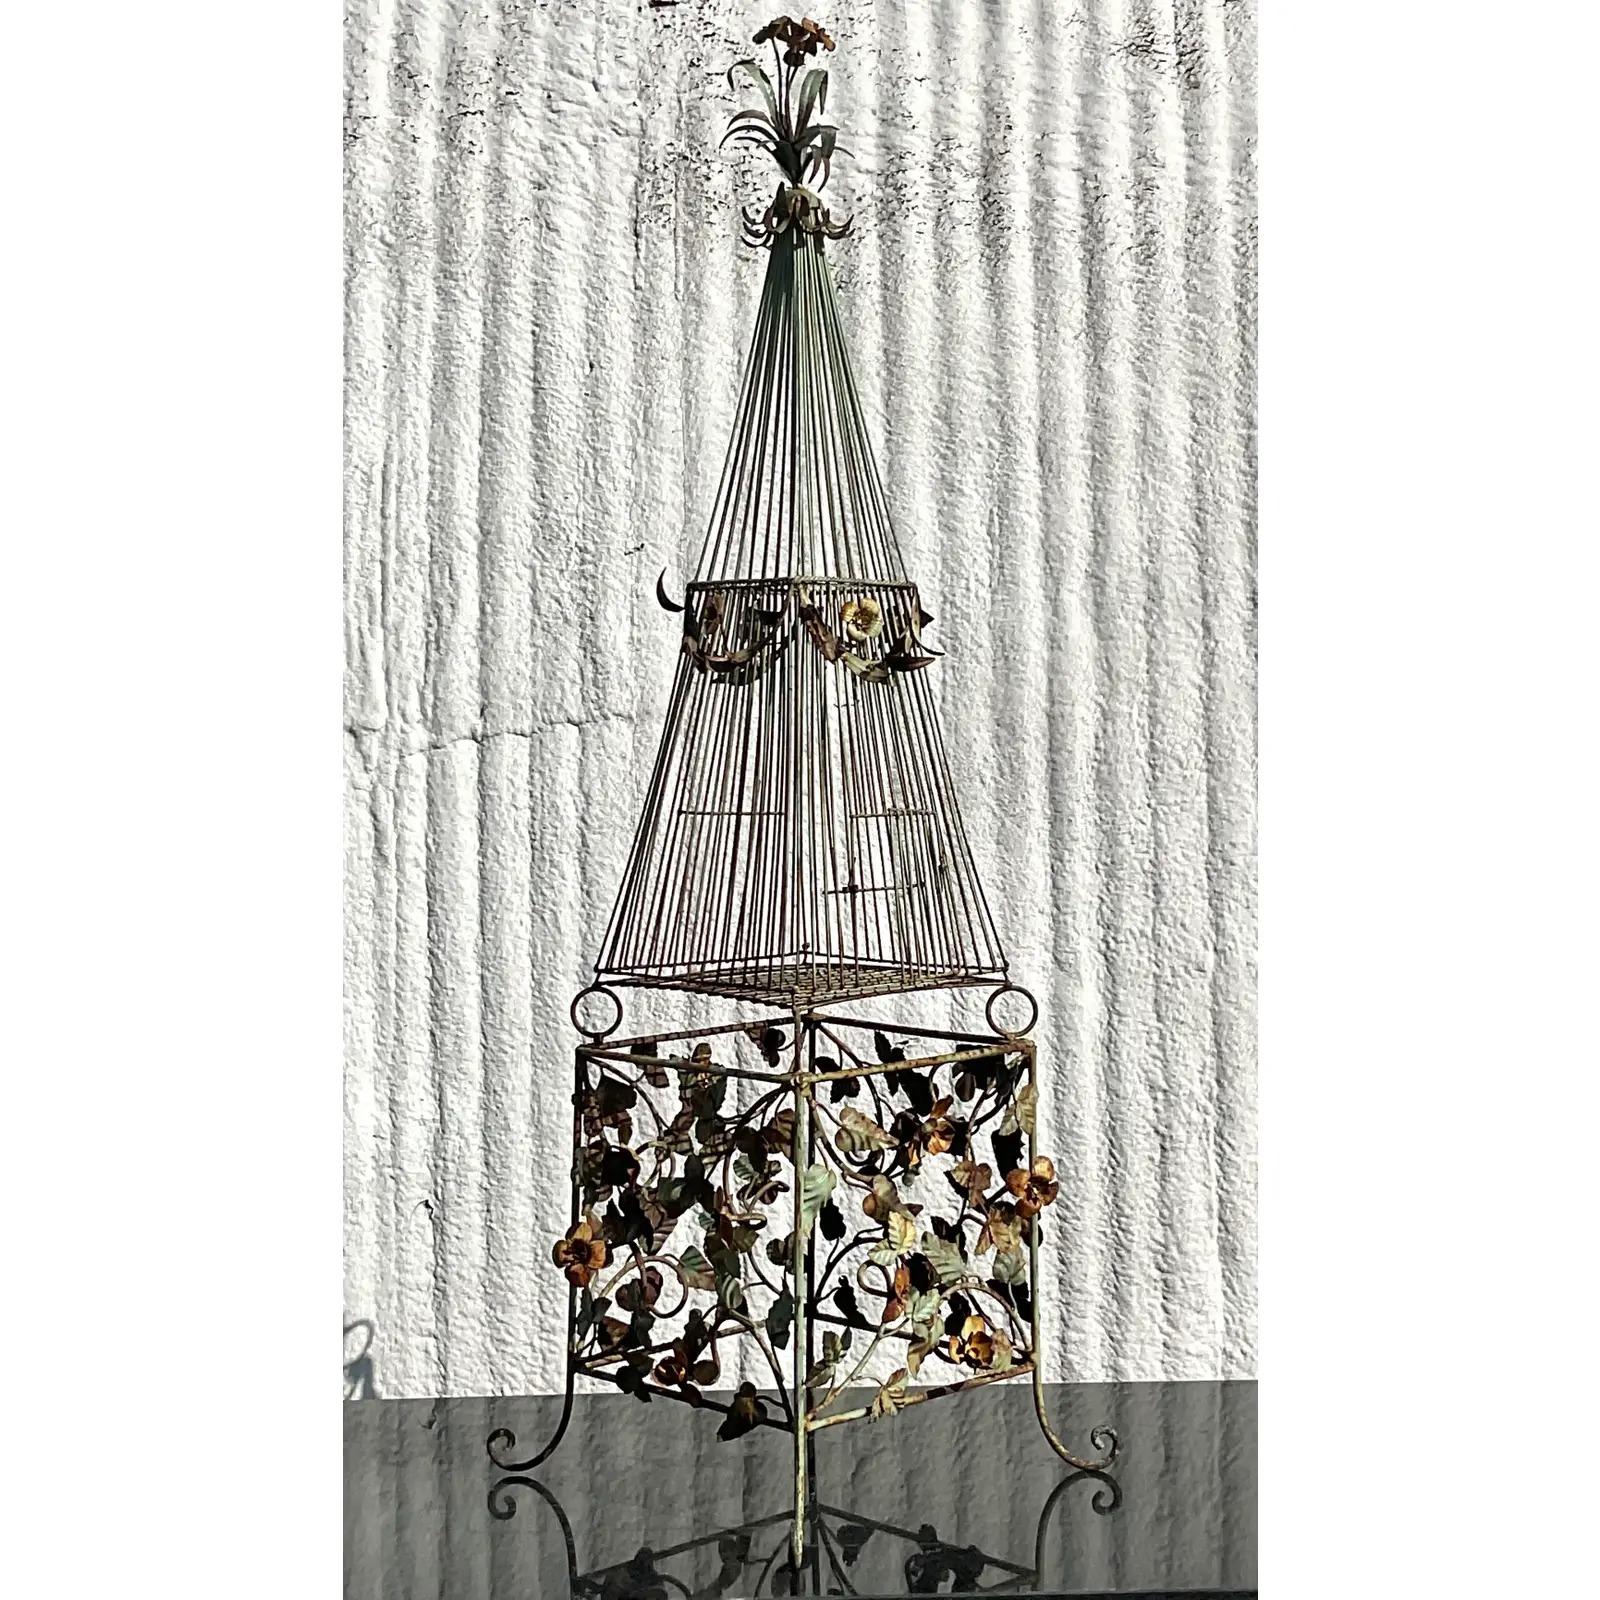 Eine unglaubliche Vintage Regency Vogelkäfig. Schmiedeeiserner Rahmen mit viel Liebe zum Detail. Alles über schwebende Blumen und Vintage. Die herrliche Patina der Zeit verleiht ihm ein echtes historisches Aussehen. Erworben aus einem Nachlass in